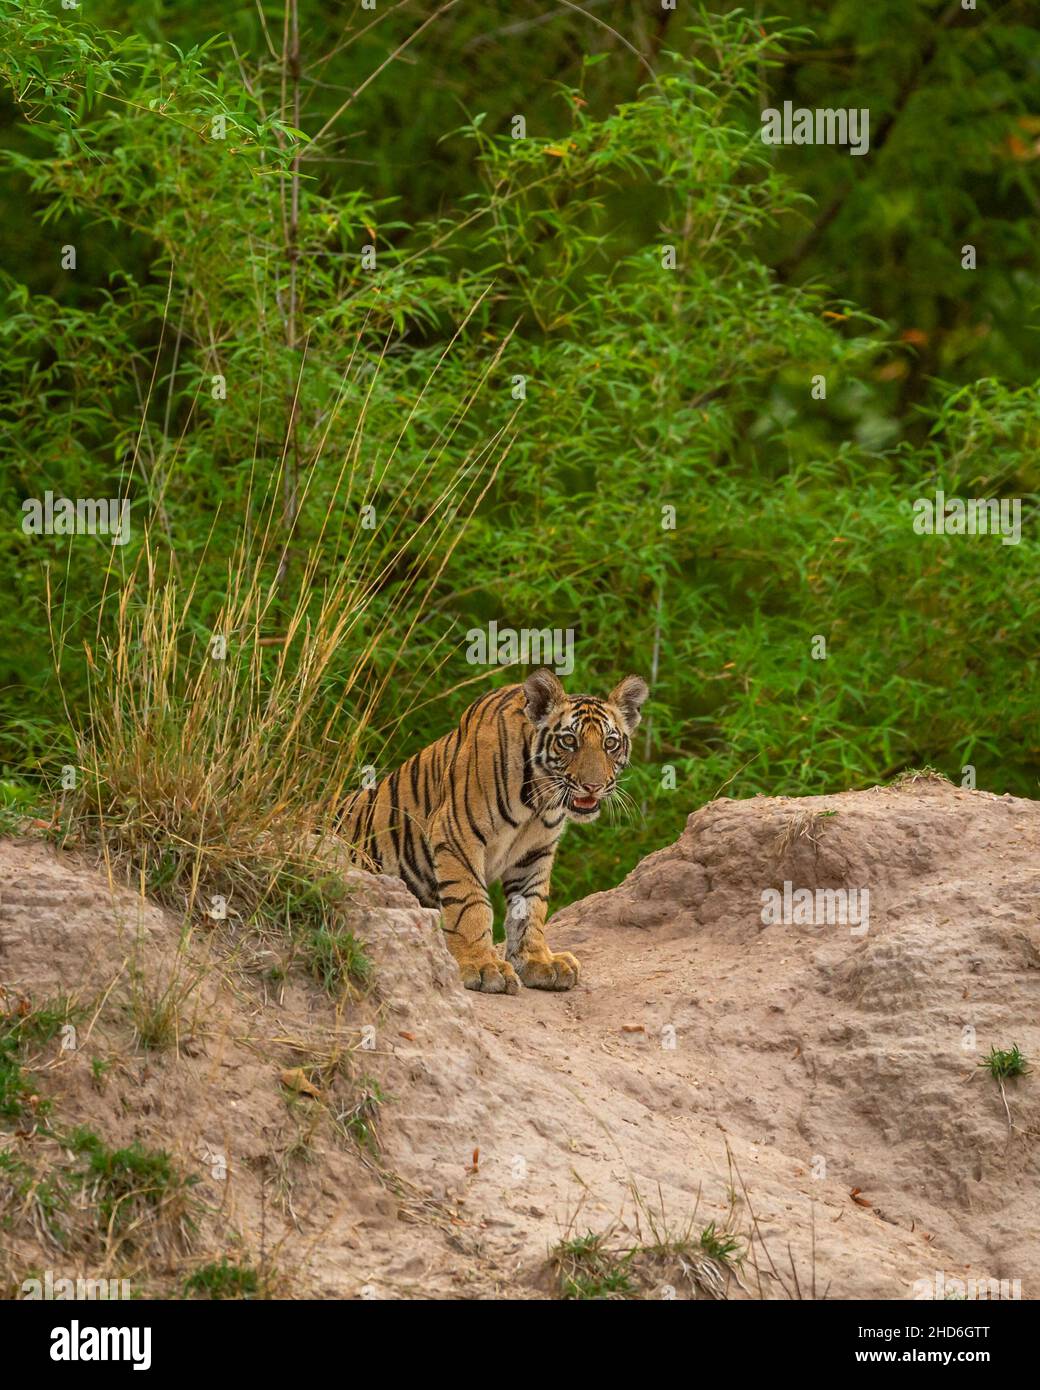 Indian Wild royal bengal mâle Tiger cub portrait dans fond vert naturel pendant le safari dans la jungle ou conduire dans la forêt de l'état de tigre de l'inde Banque D'Images